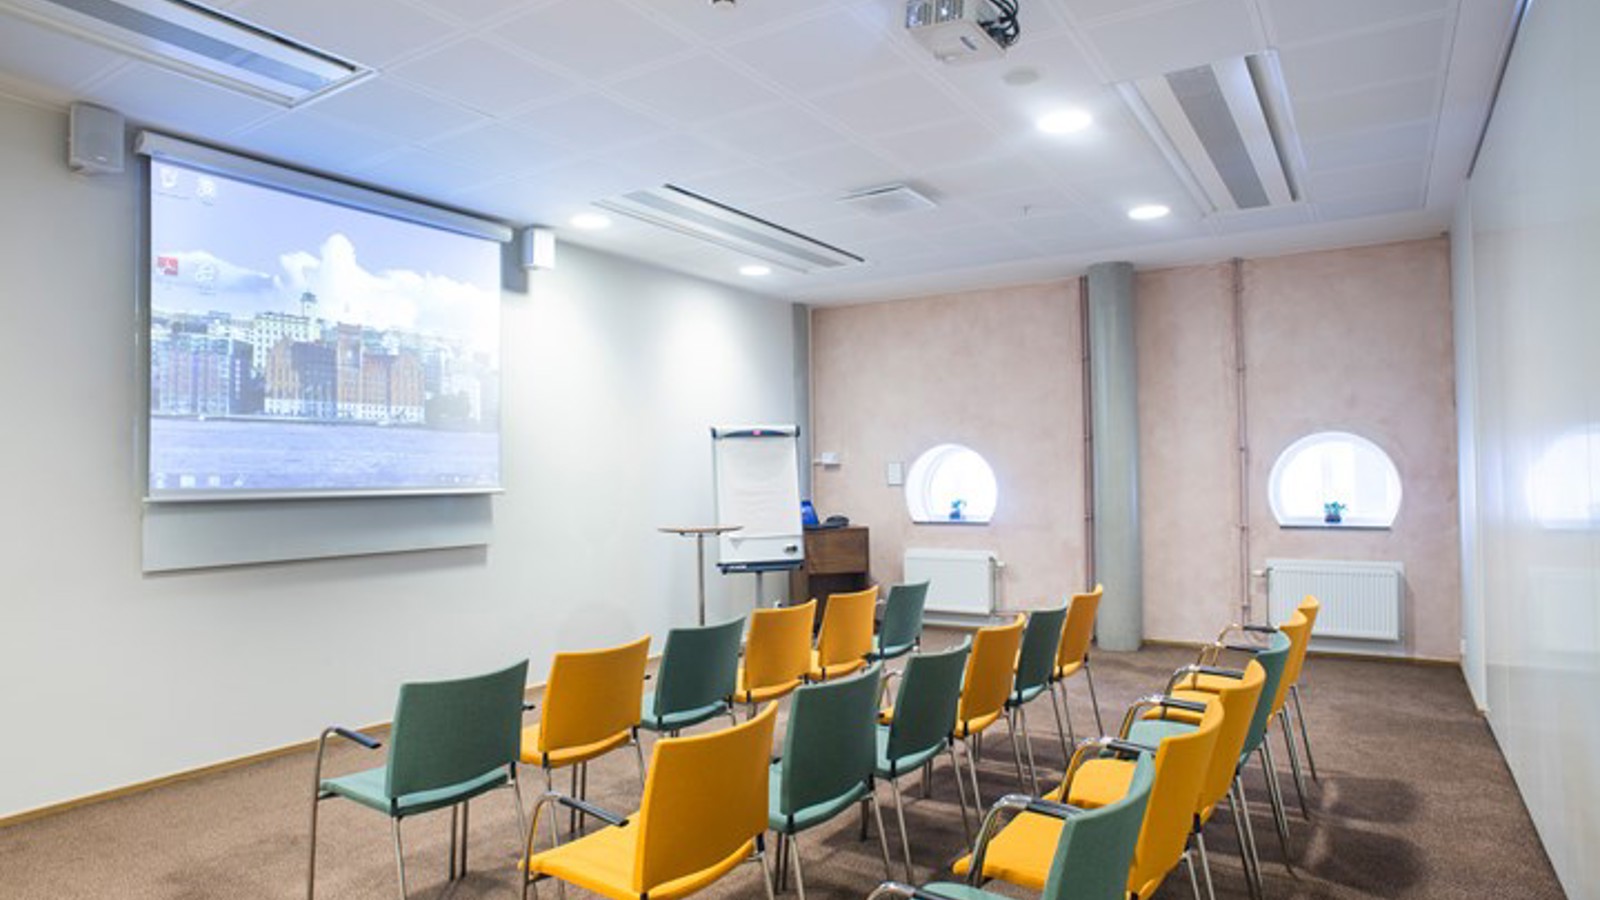 Konferensrum med biosittning, gula och blå stolar, vita väggar och projektor